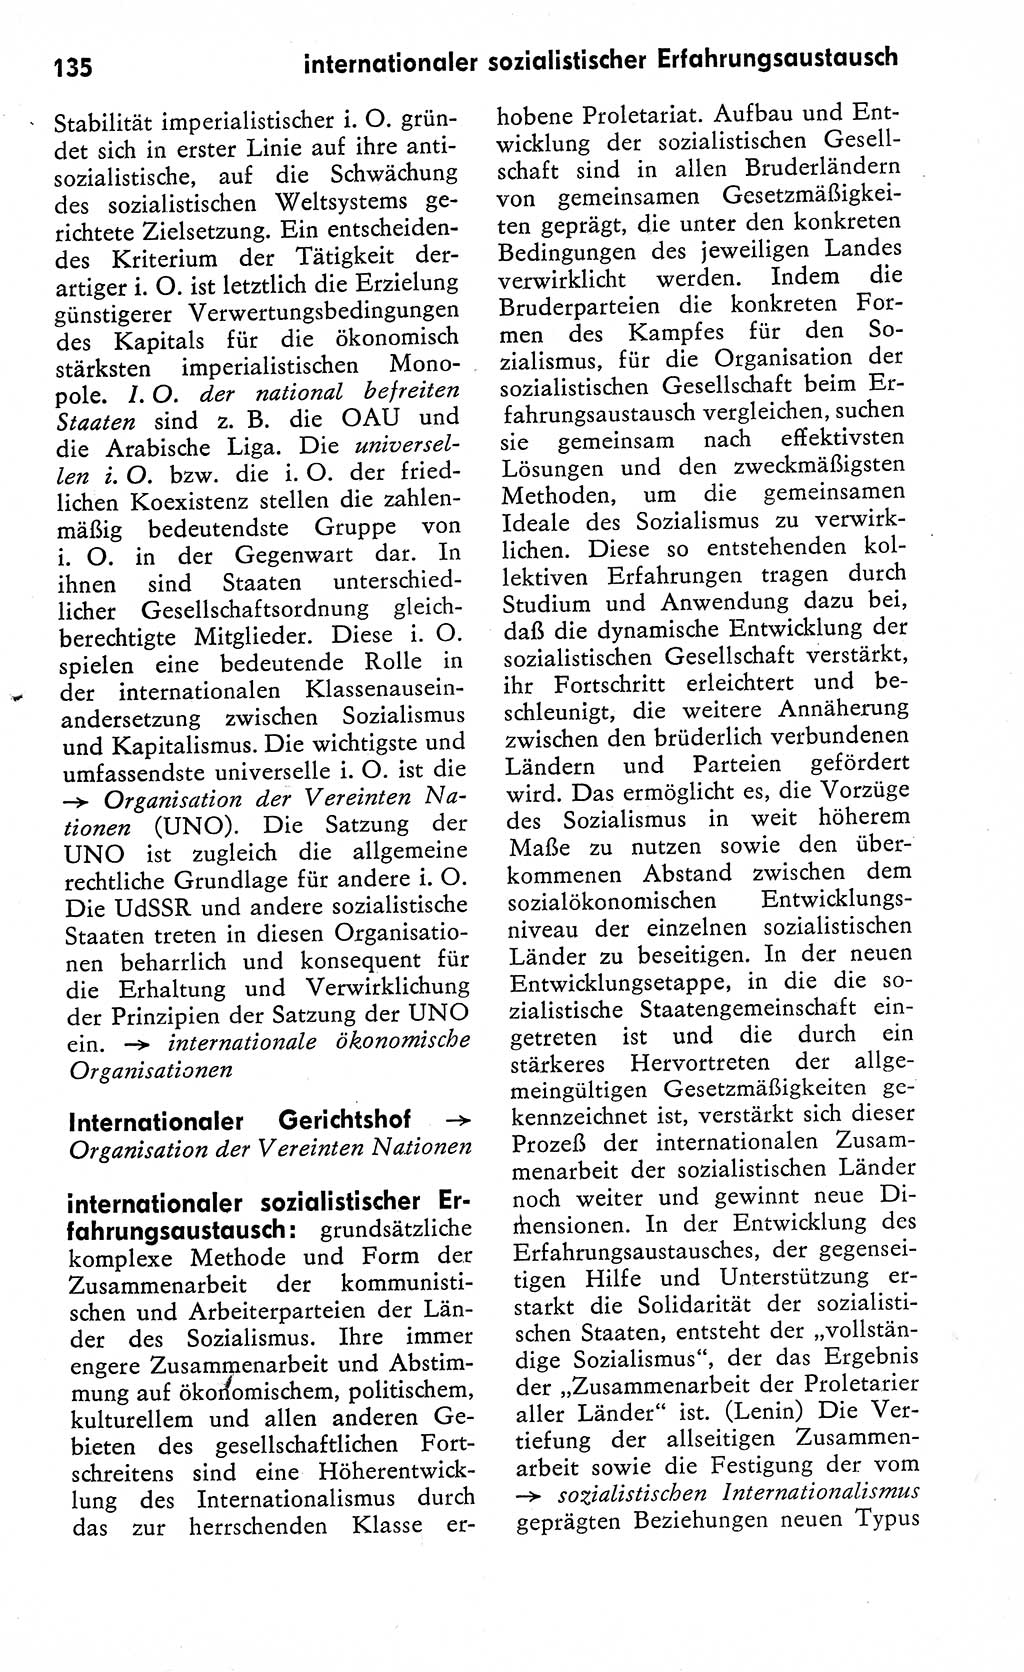 Wörterbuch zum sozialistischen Staat [Deutsche Demokratische Republik (DDR)] 1974, Seite 135 (Wb. soz. St. DDR 1974, S. 135)